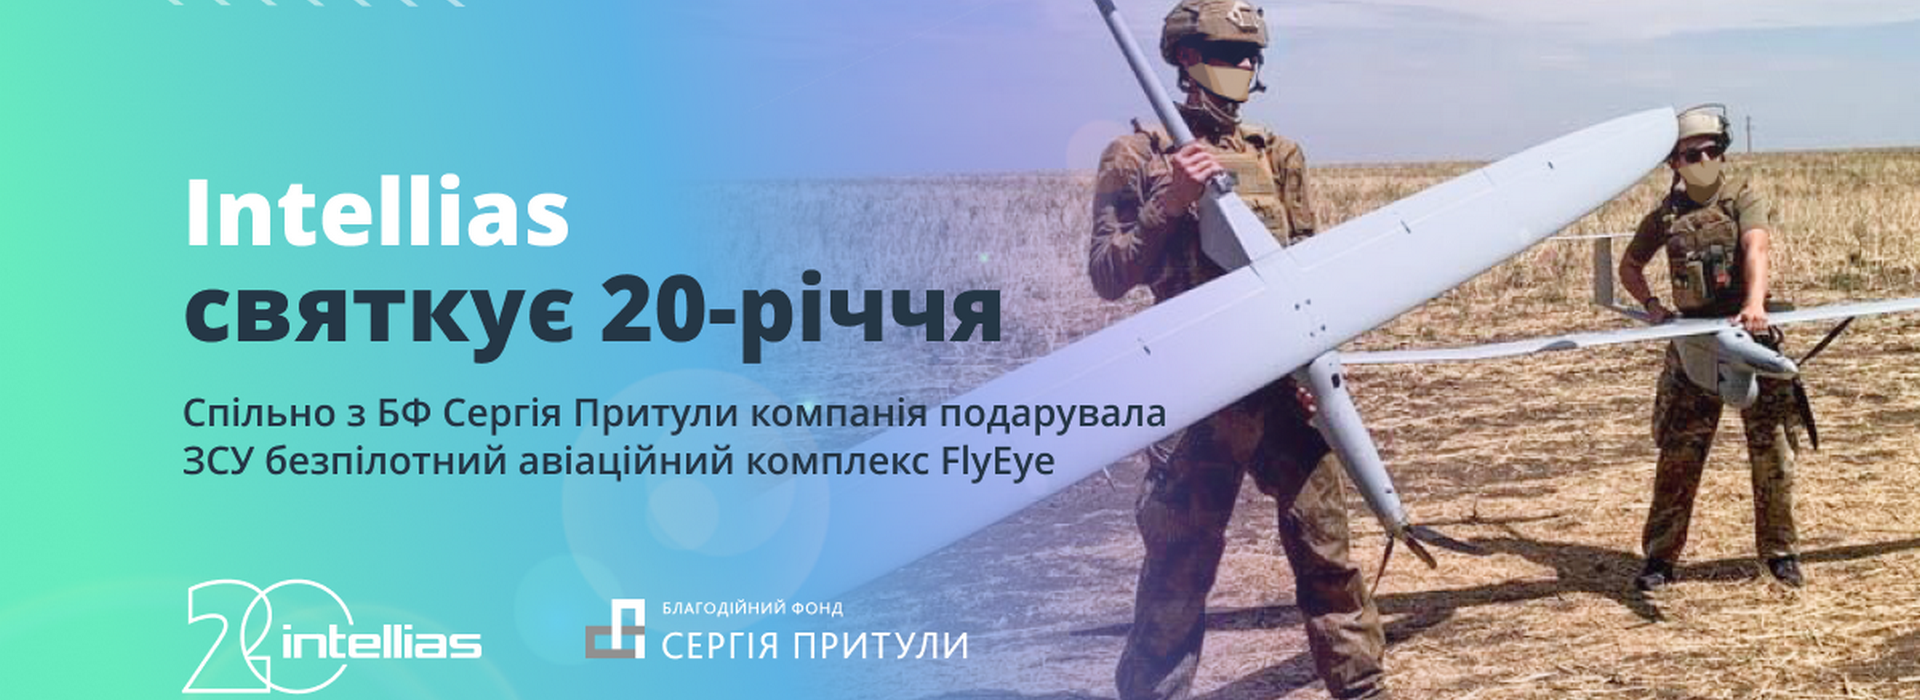 Intellias у партнерстві з Благодійним Фондом Сергія Притули придбав безпілотний авіаційний комплекс FlyEye для Збройних Сил України